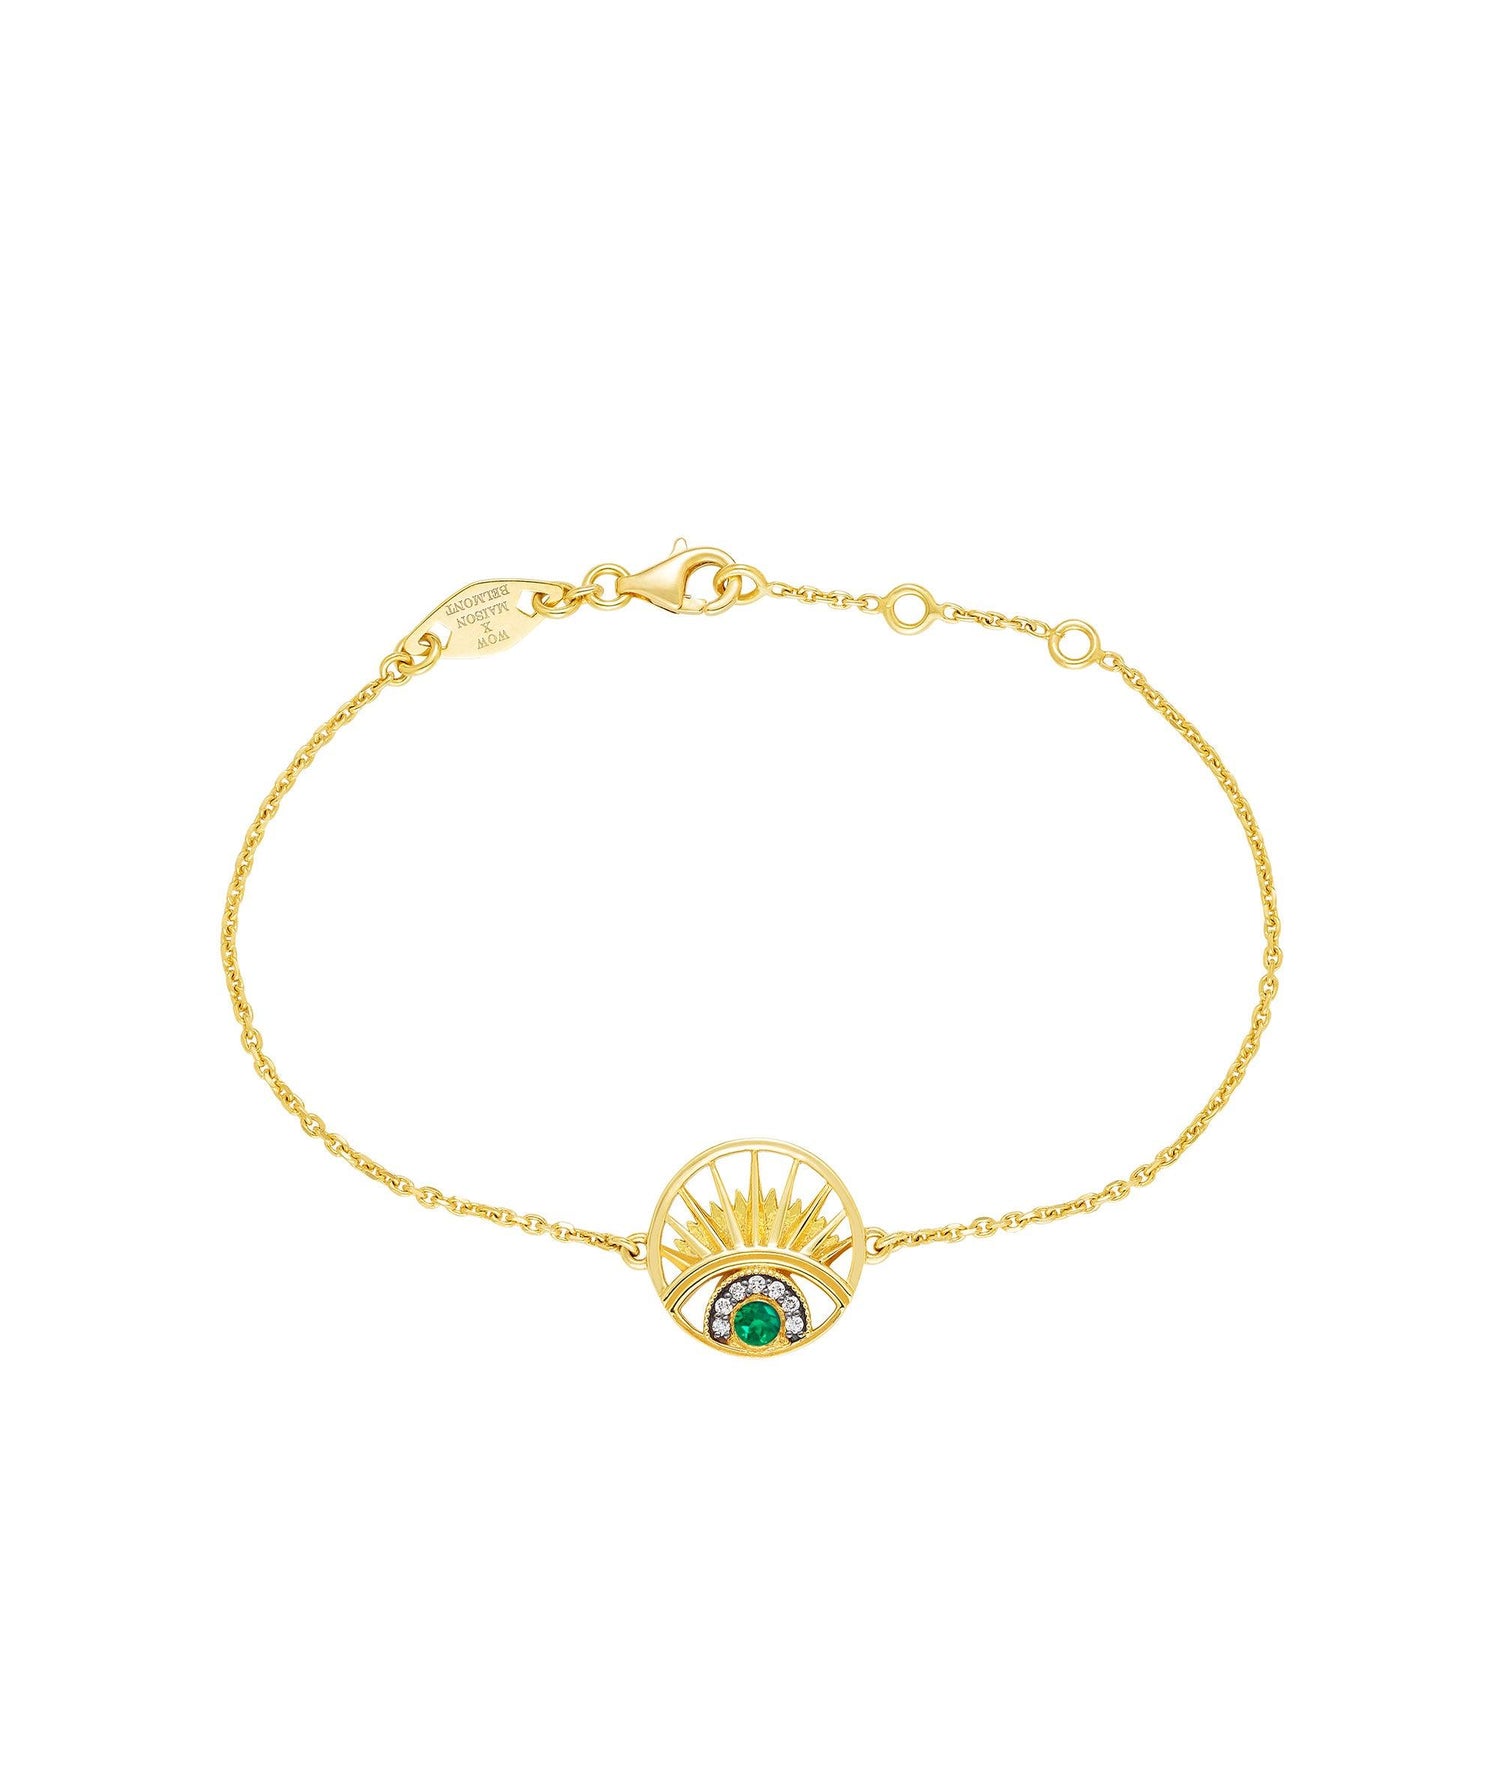 'Keep An Eye On Me' Bracelet Emerald - Wing of Wisdom